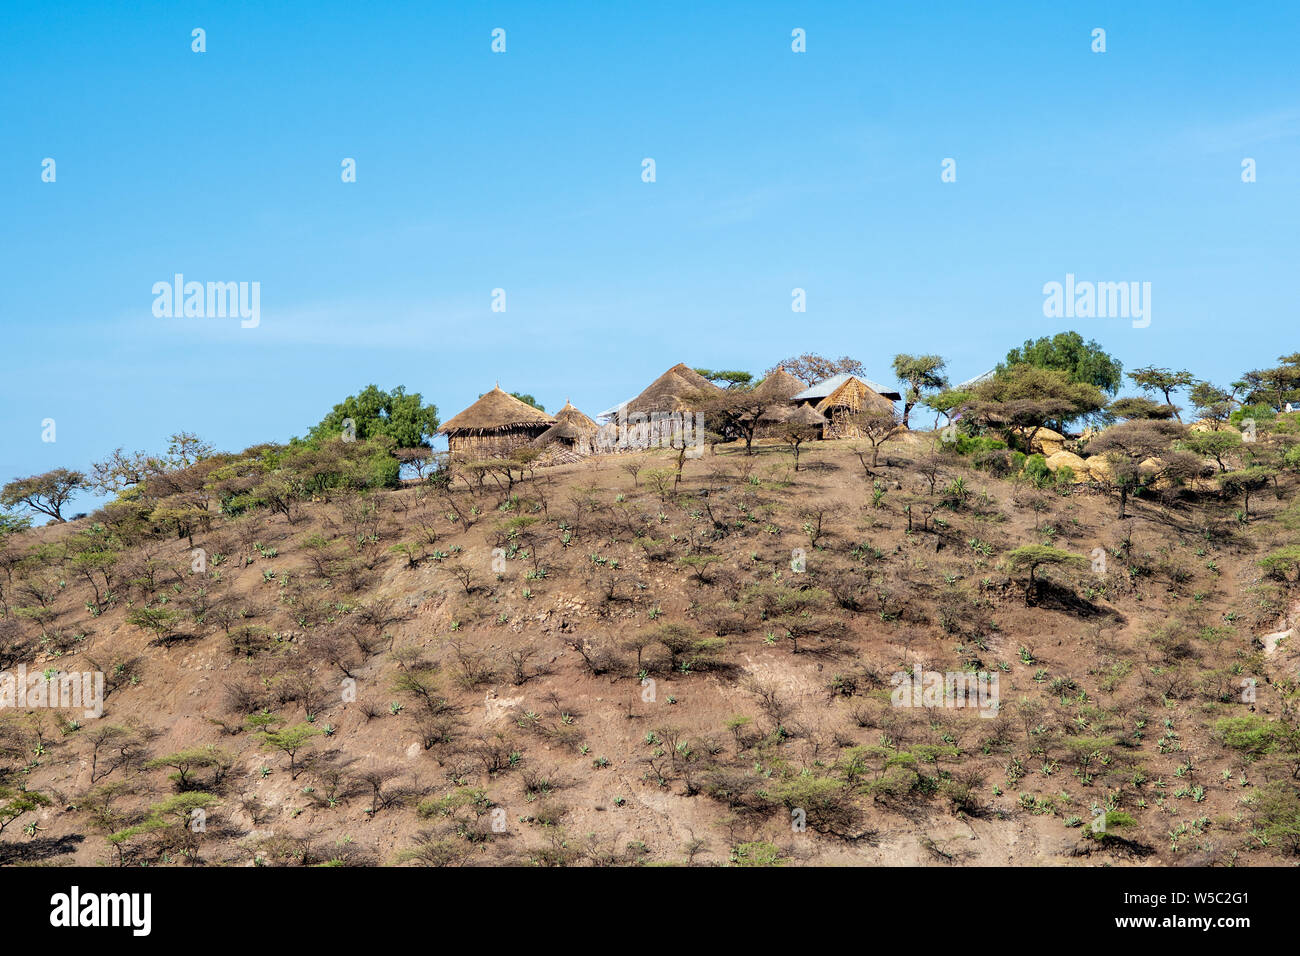 Eine kleine Landwirtschaft auf einem Hügel außerhalb von Mekele, Äthiopien. Mekele, Äthiopien Stockfoto